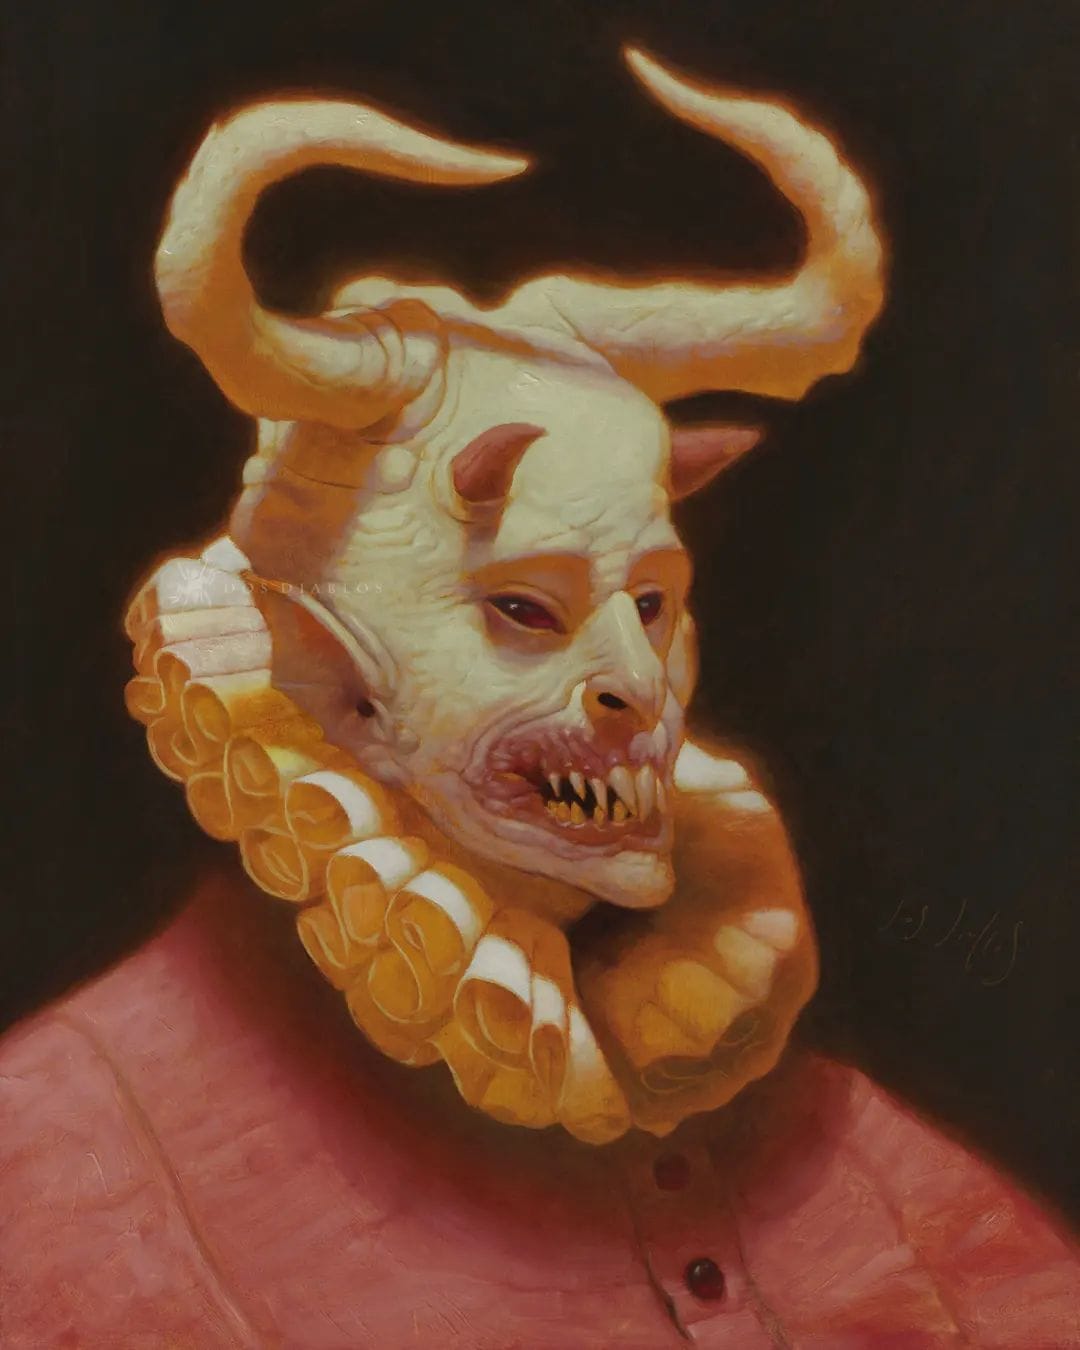 Portrait d'une créature surnaturelle souriante avec des dents pointues et des cornes de diables.